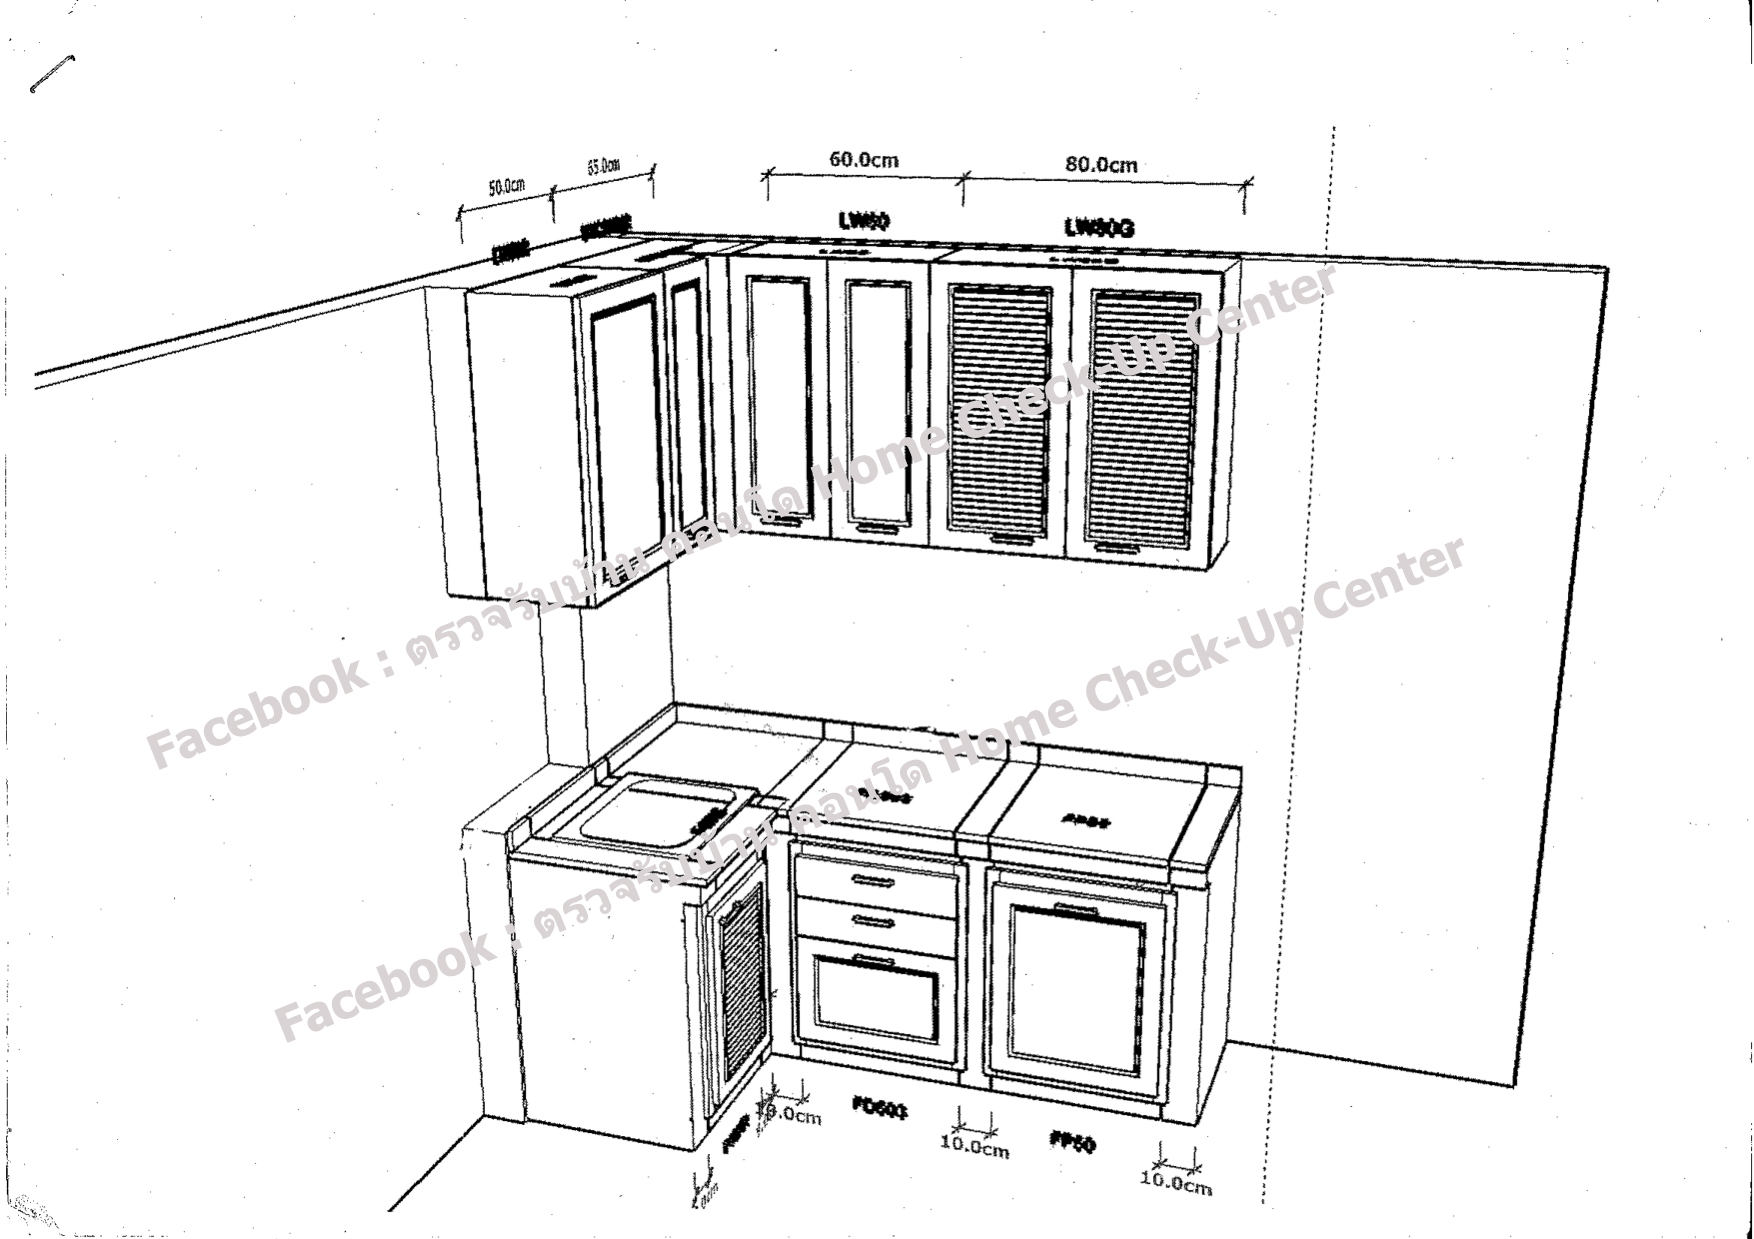 ตัวอย่างการออกแบบห้องครัวด้วยโปรแกรม3D